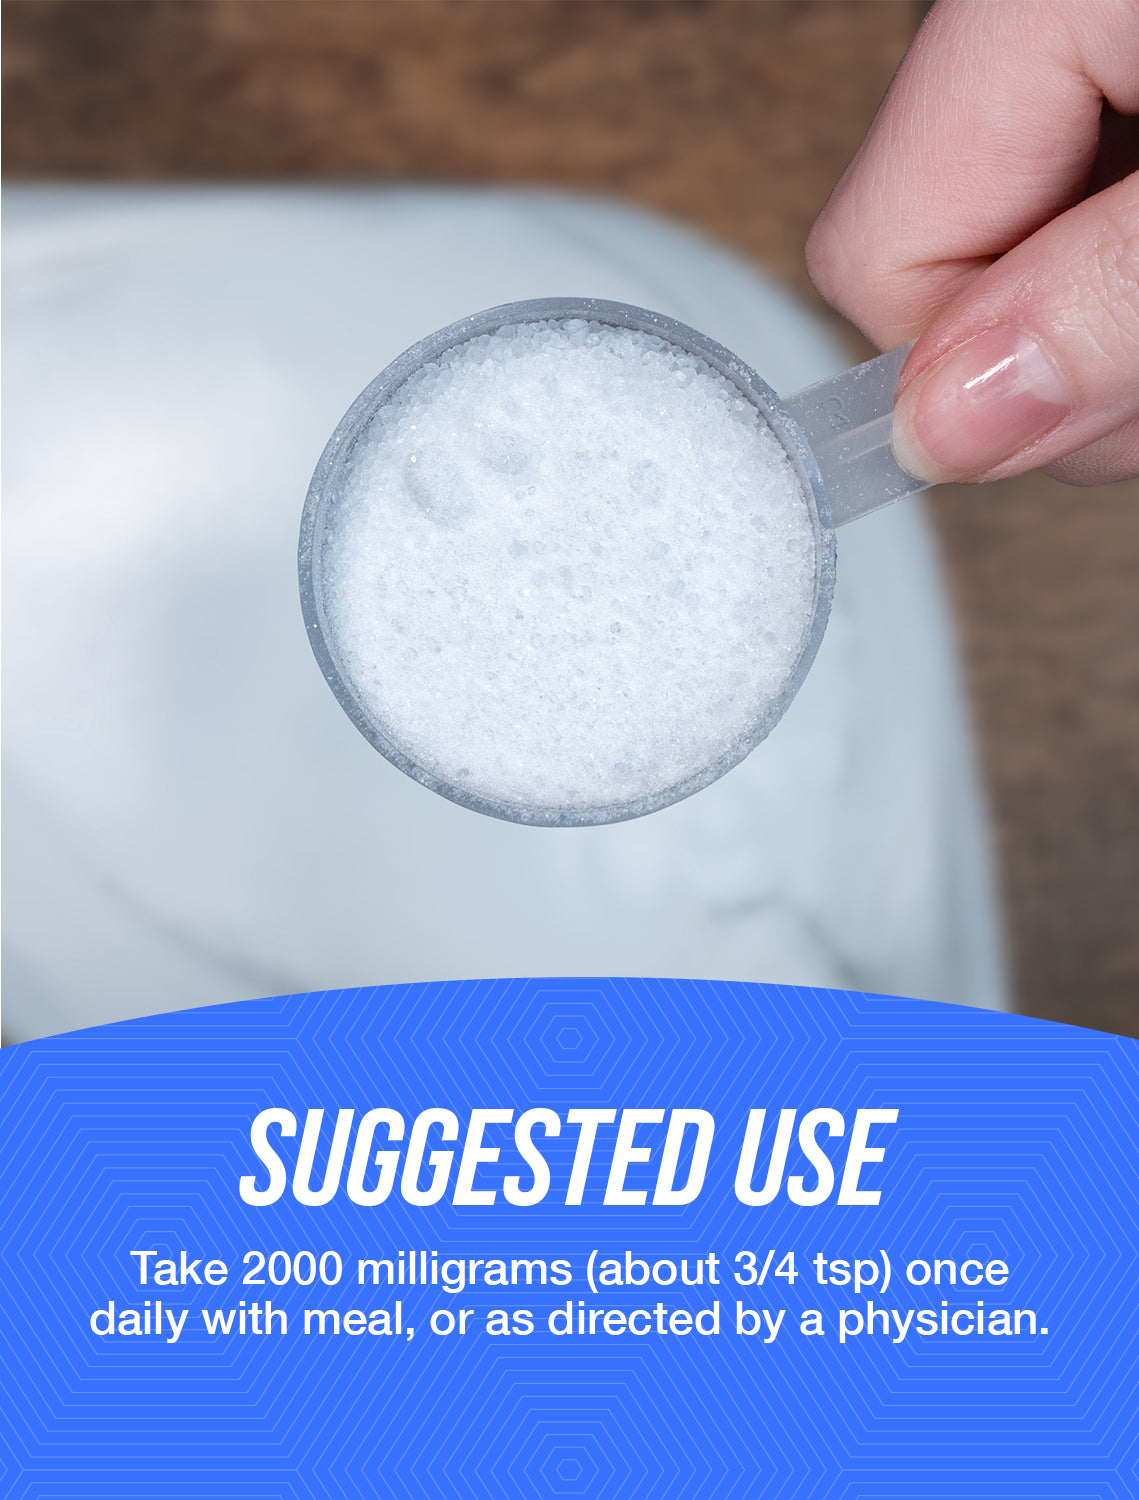 Sodium Ascorbate powder suggested use image